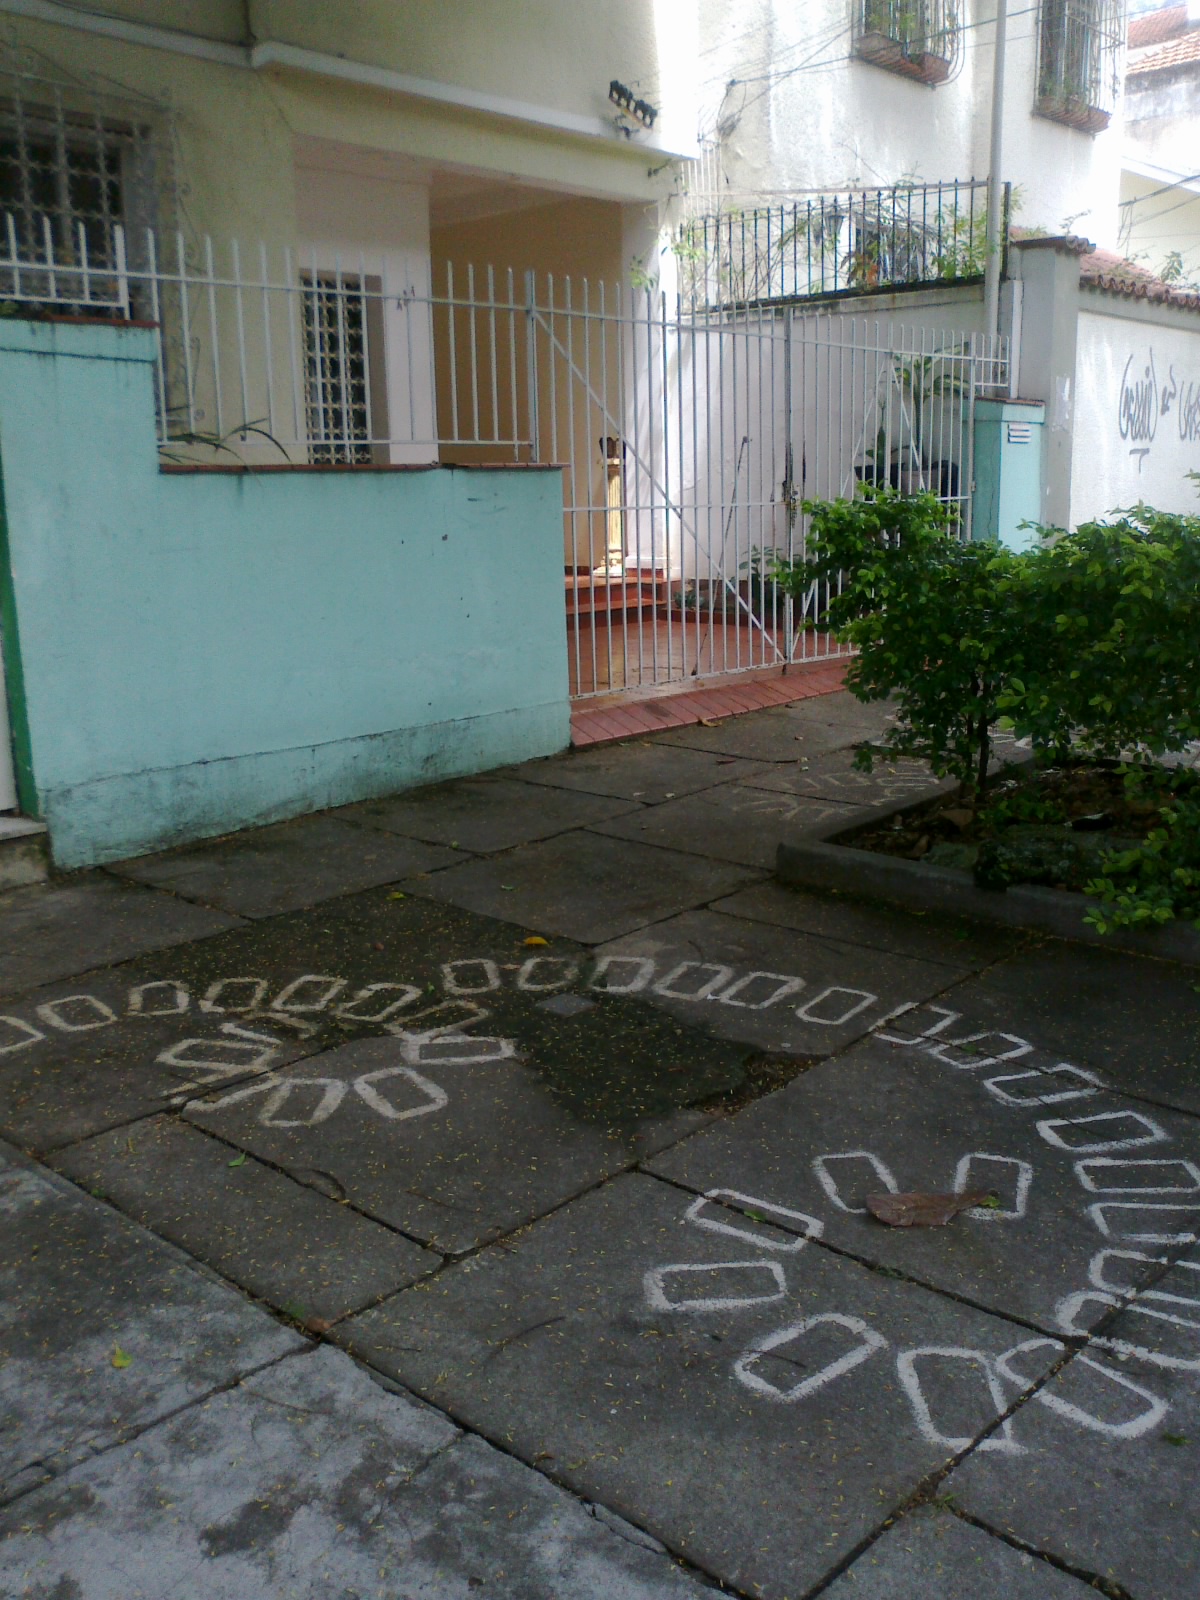  Figura 2 – Calçada com intervenção artística de Fabiano do Nascimento Costa. Fotografia da autora.